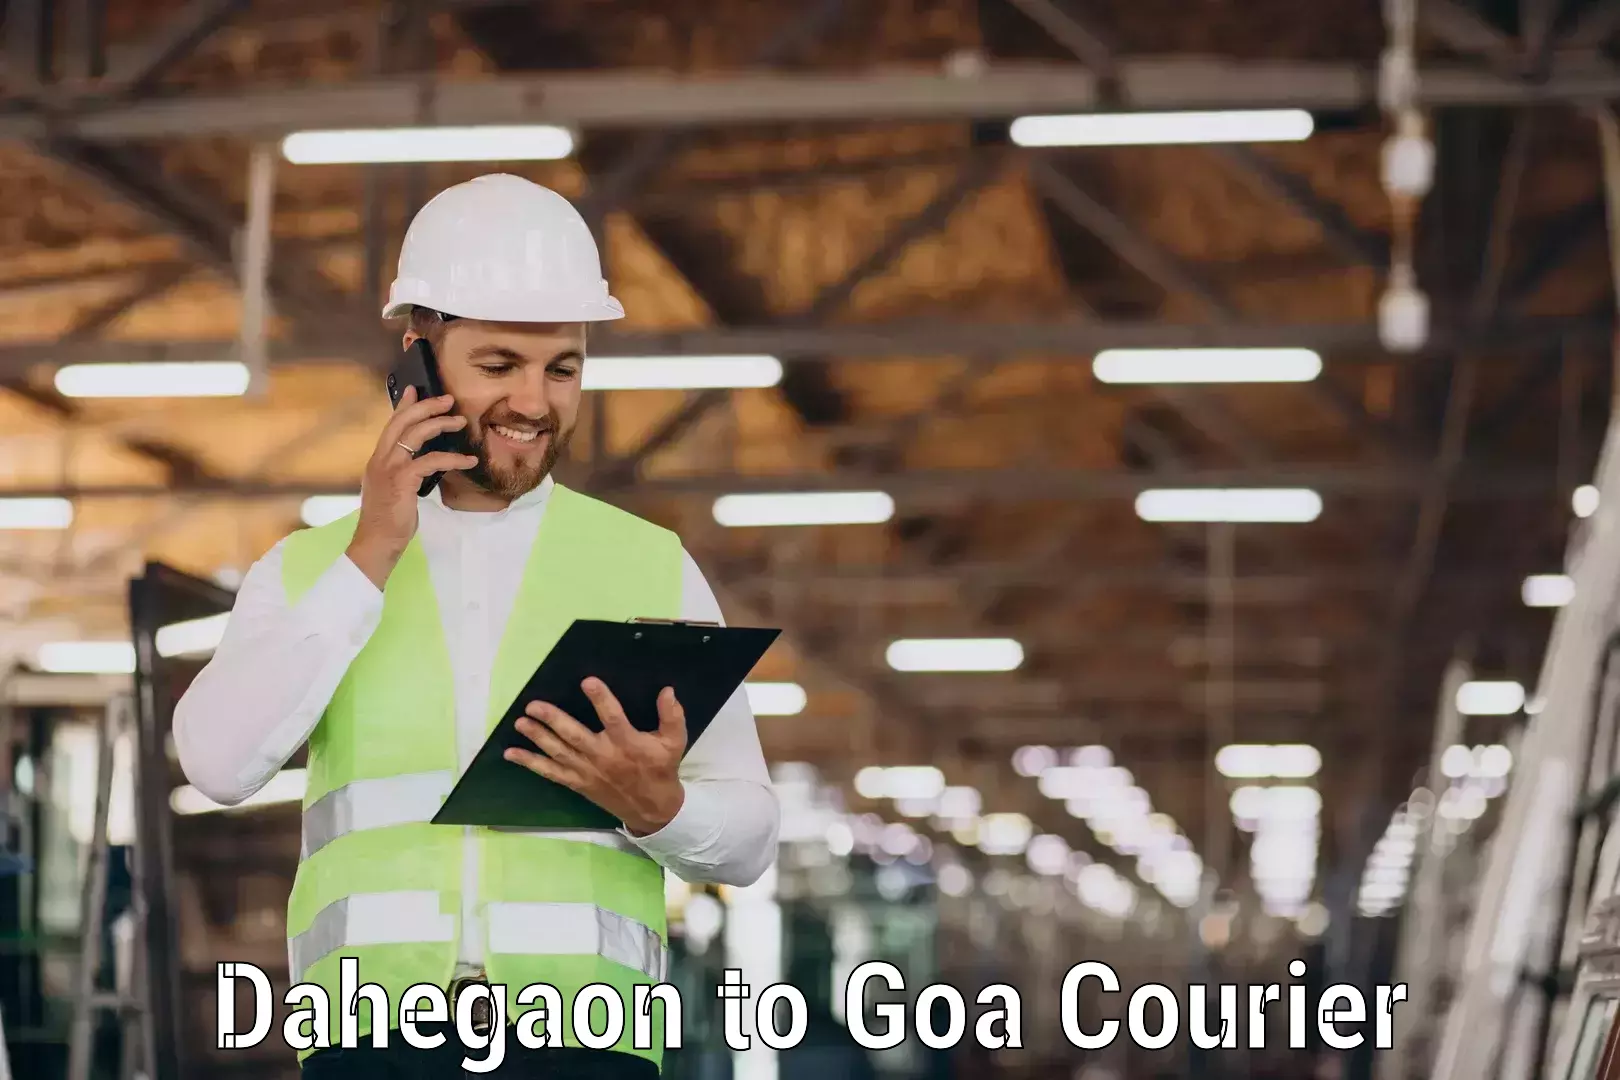 Courier service innovation Dahegaon to Panjim